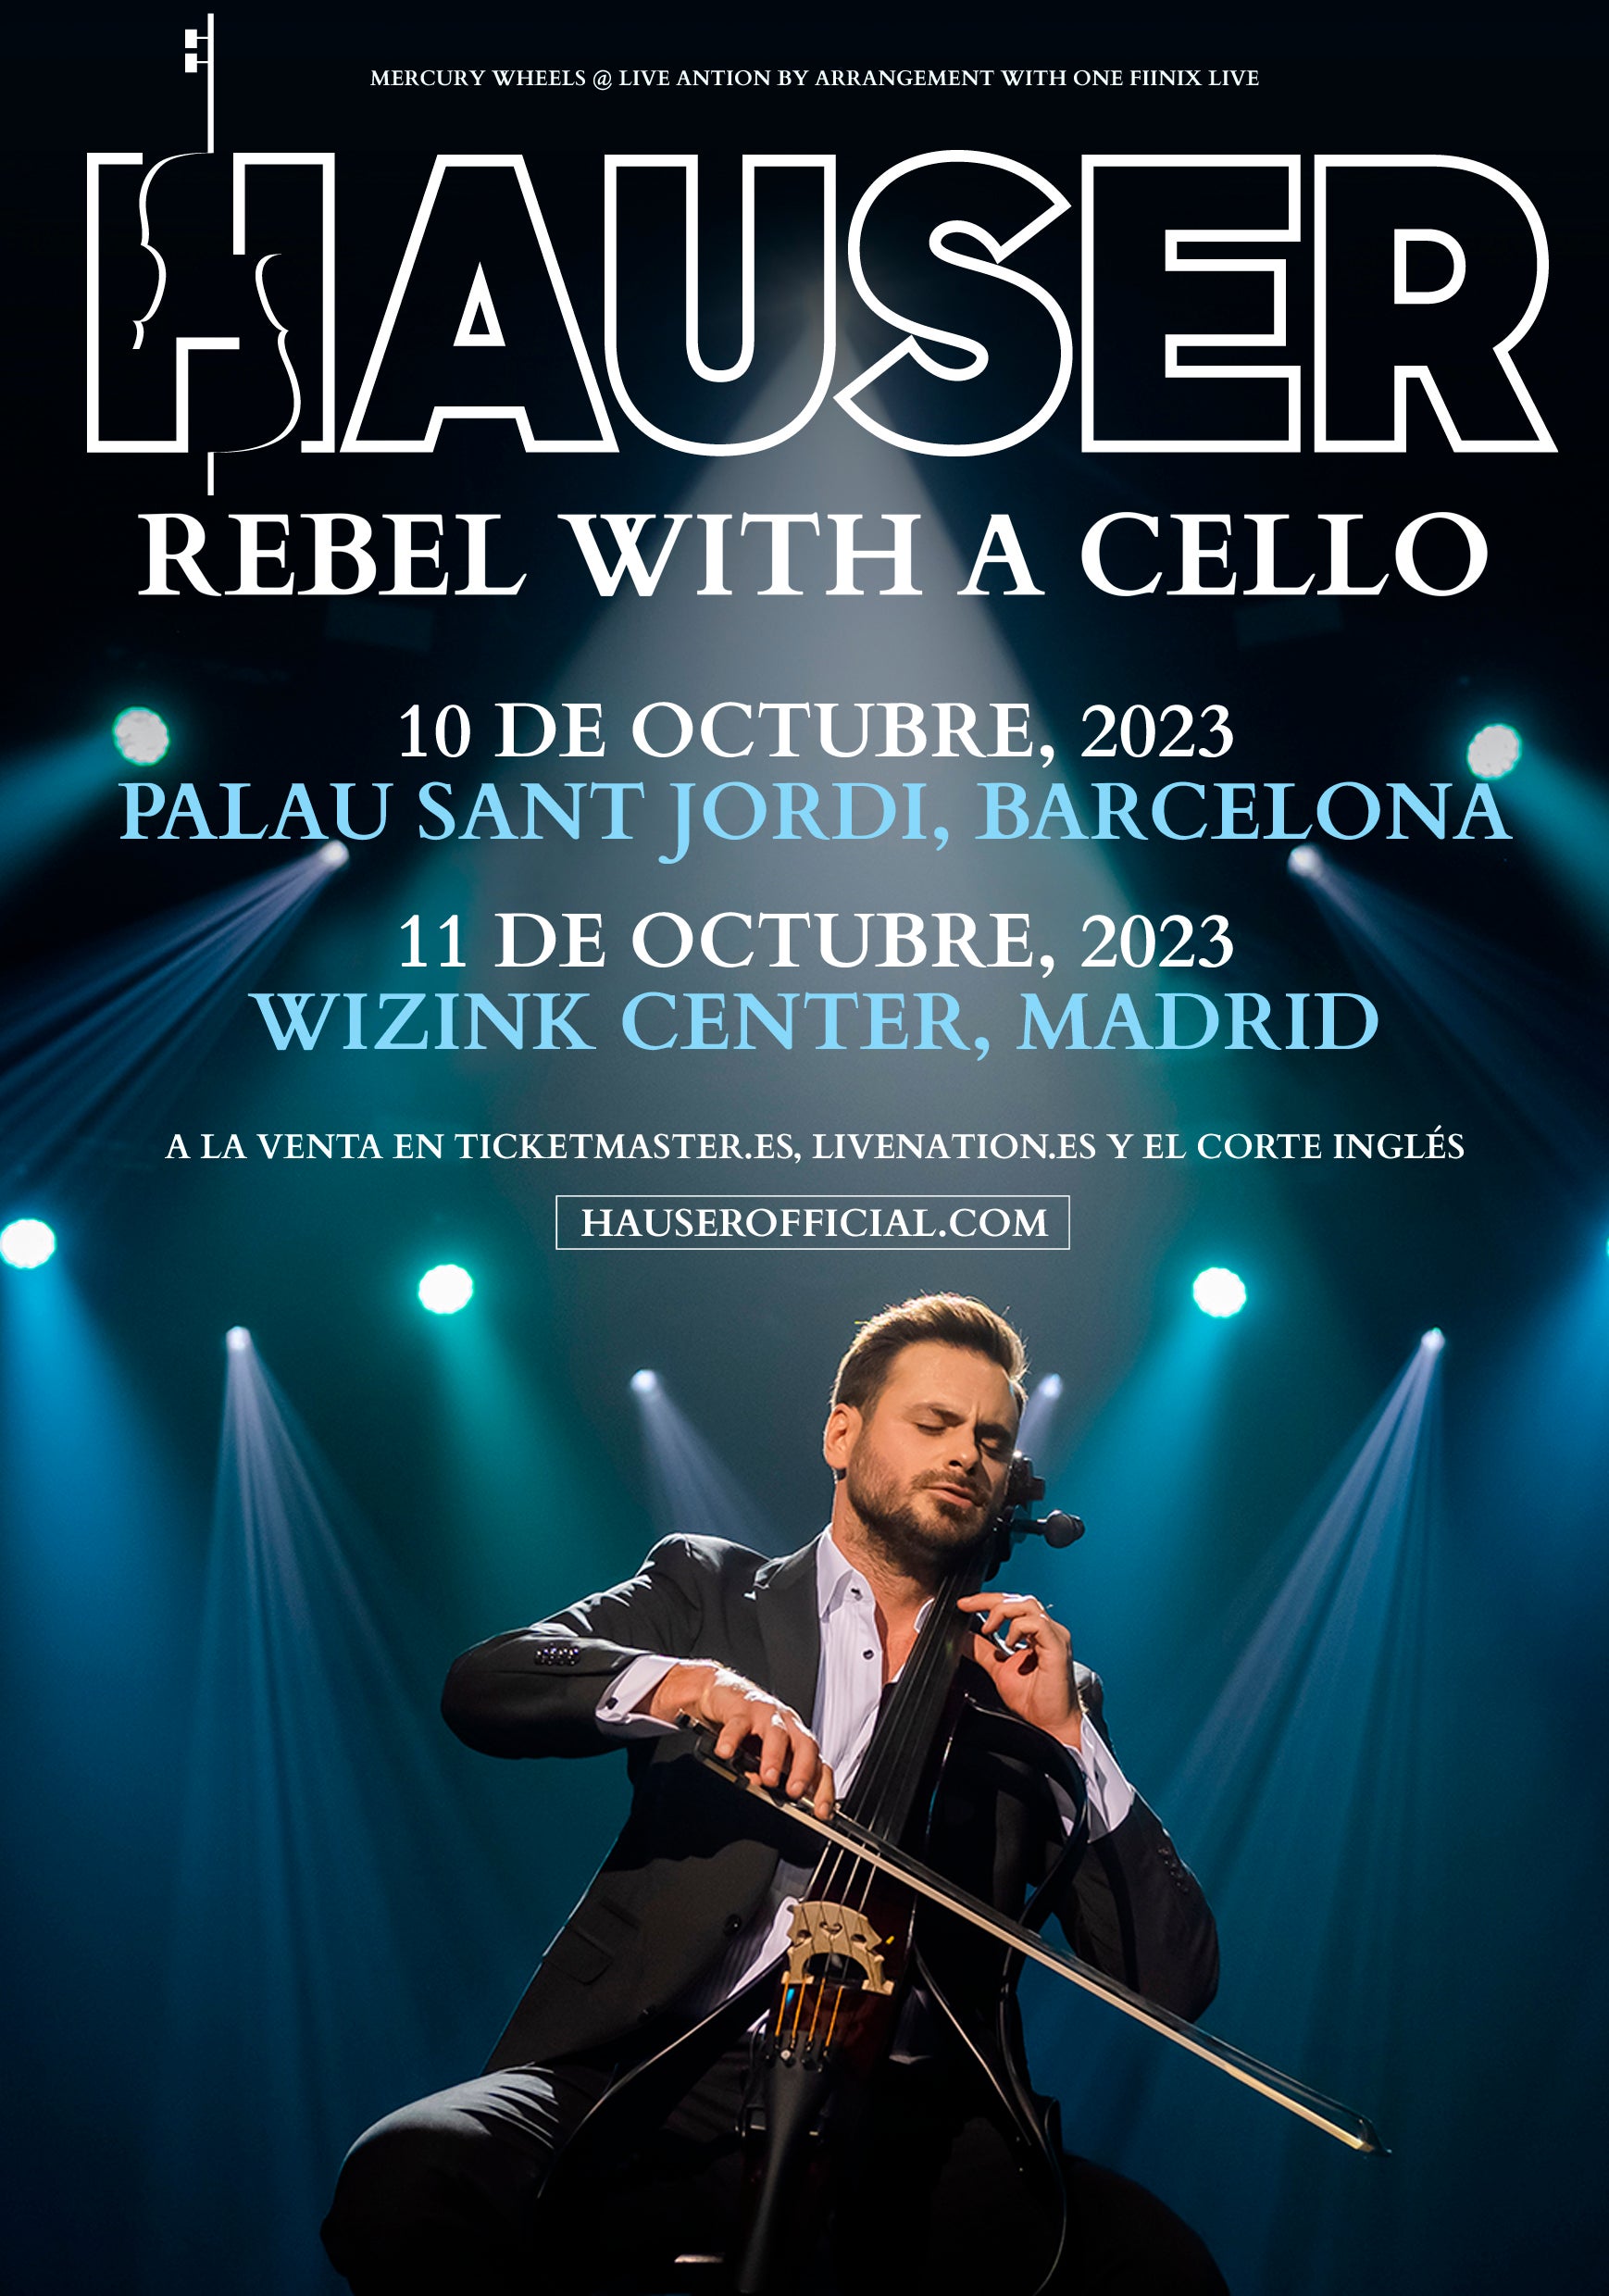 HAUSER - Rebel with a Cello en Barcelona